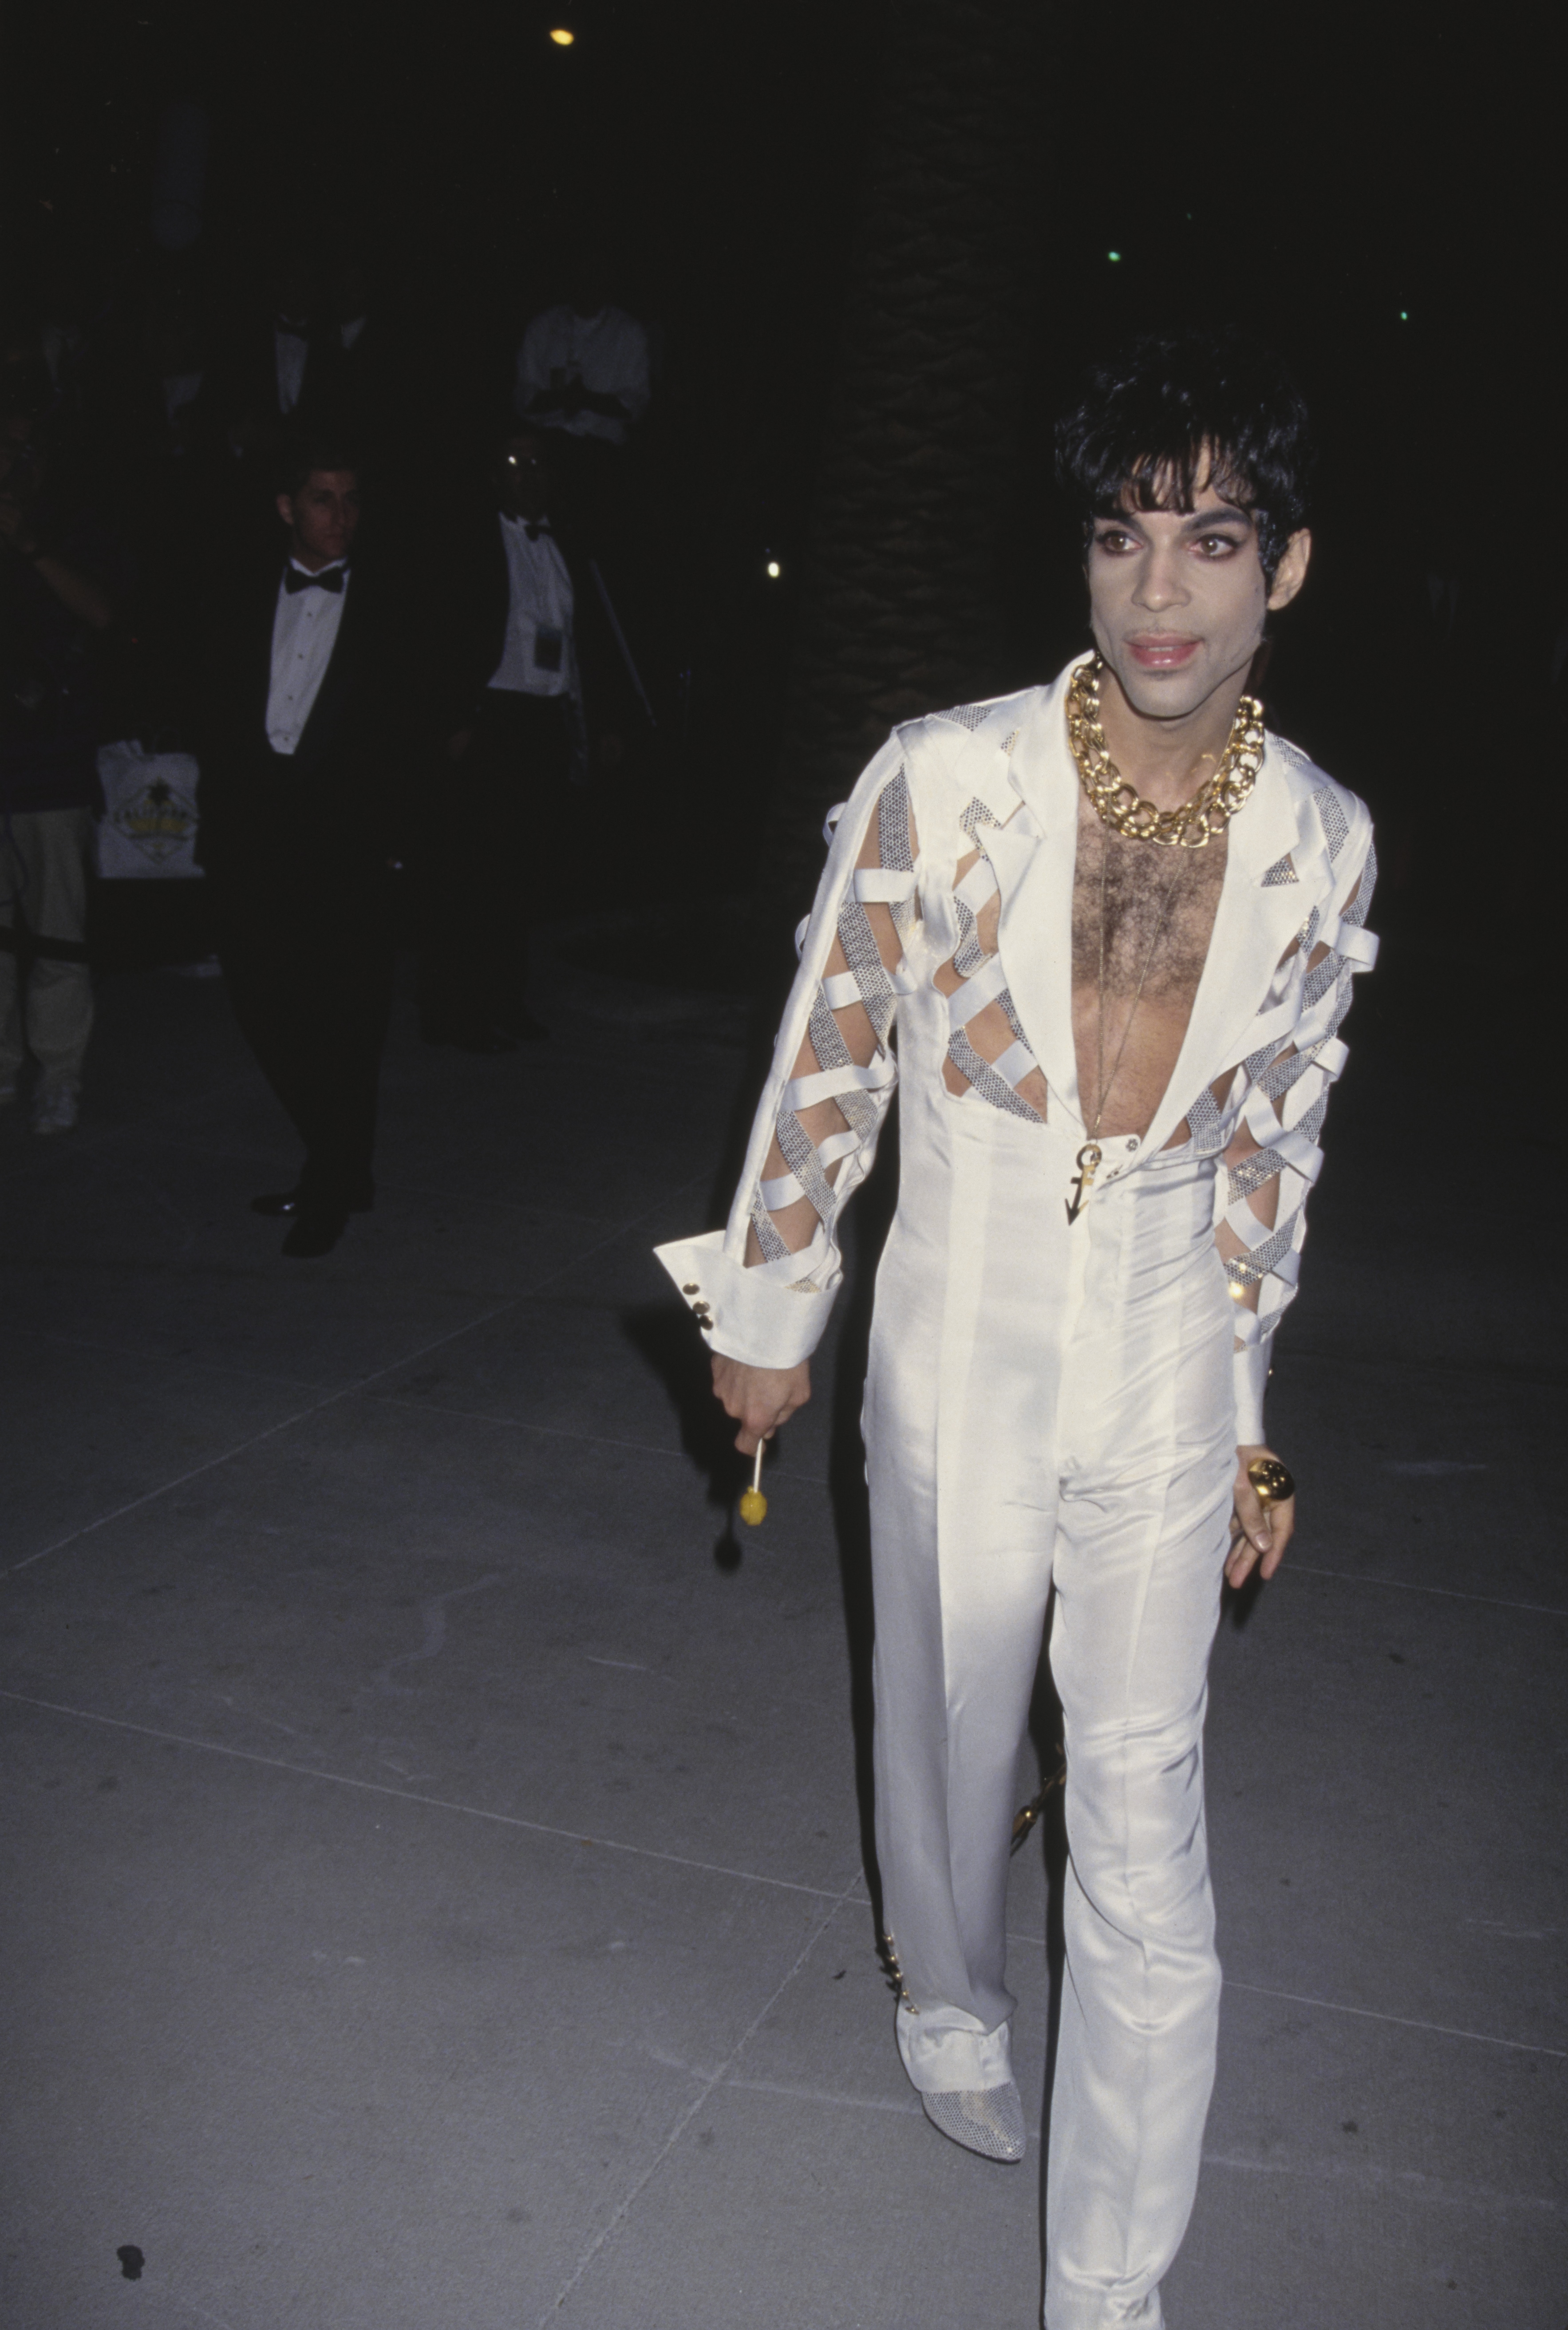 Prince à la première soirée annuelle des Oscars de Vanity Fair le 1er mars 1994 à West Hollywood, Californie | Source : Getty Images